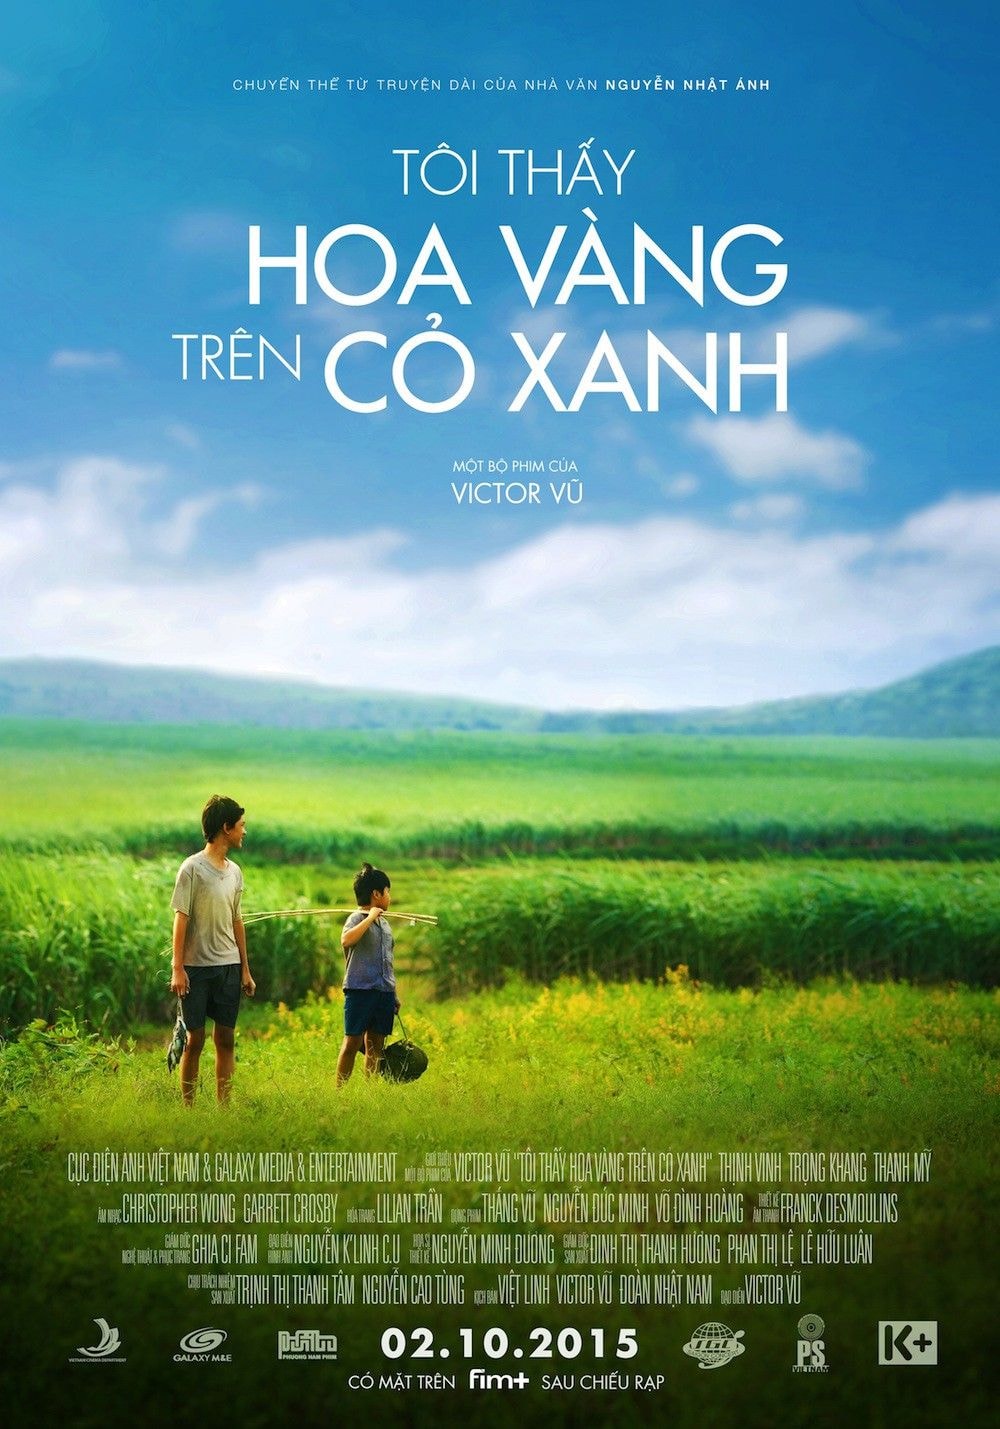 Victor Vũ - Vị đạo diễn hàng đầu Việt Nam 2